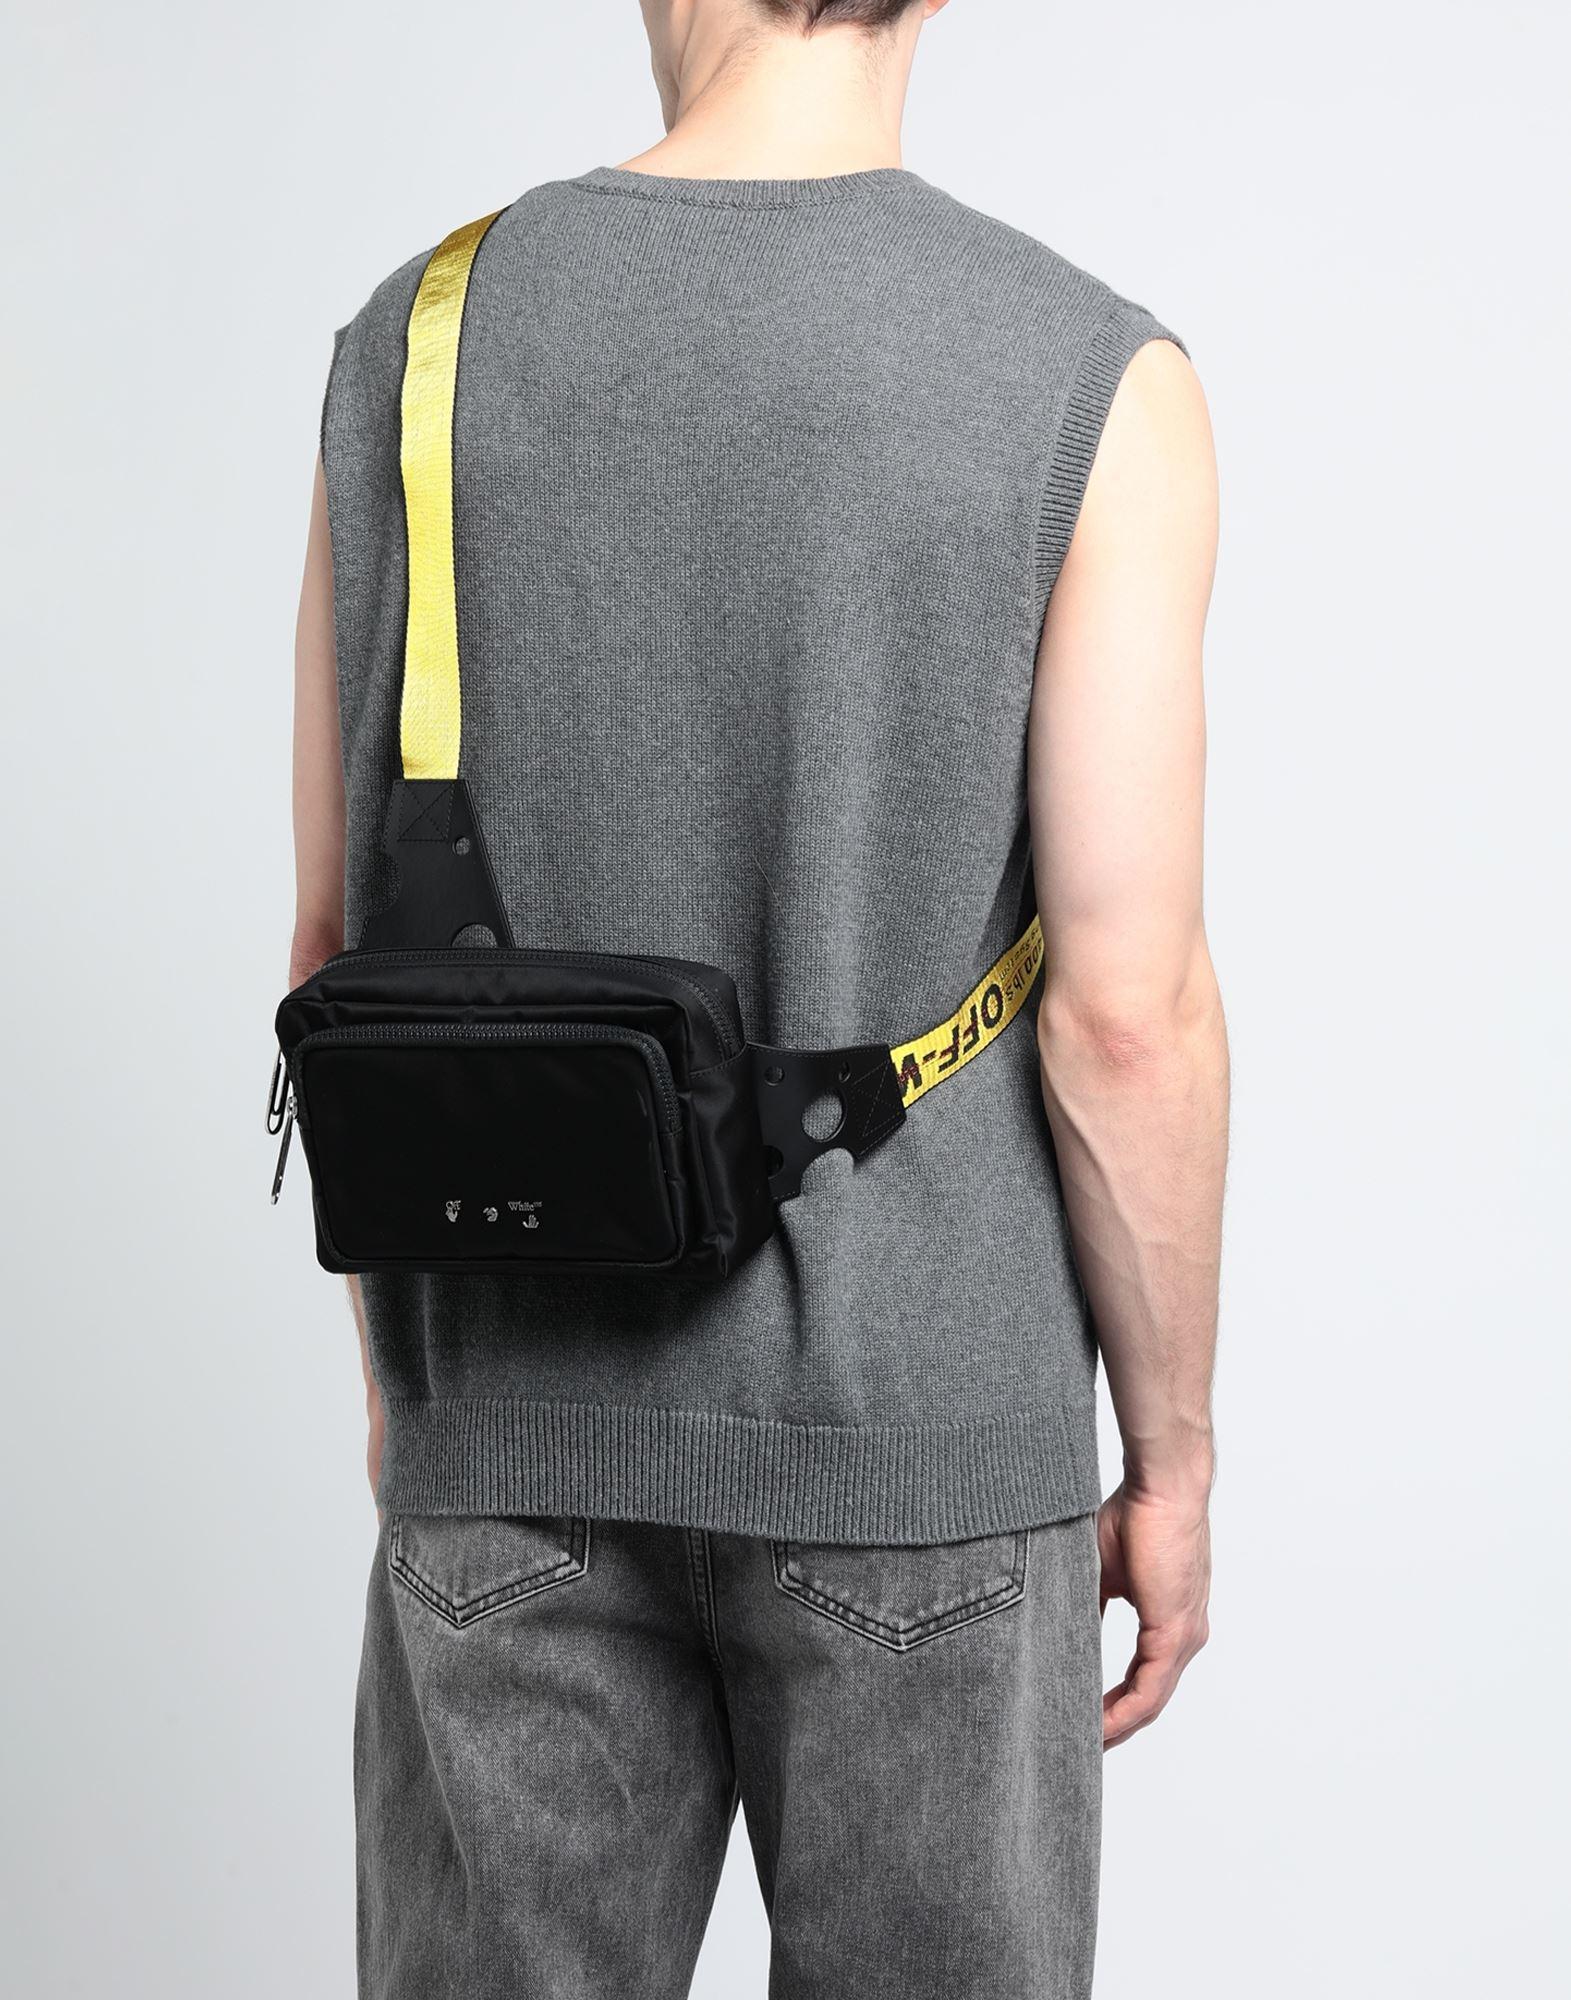 Off-White c/o Virgil Abloh Cross-body Bag in Black for Men